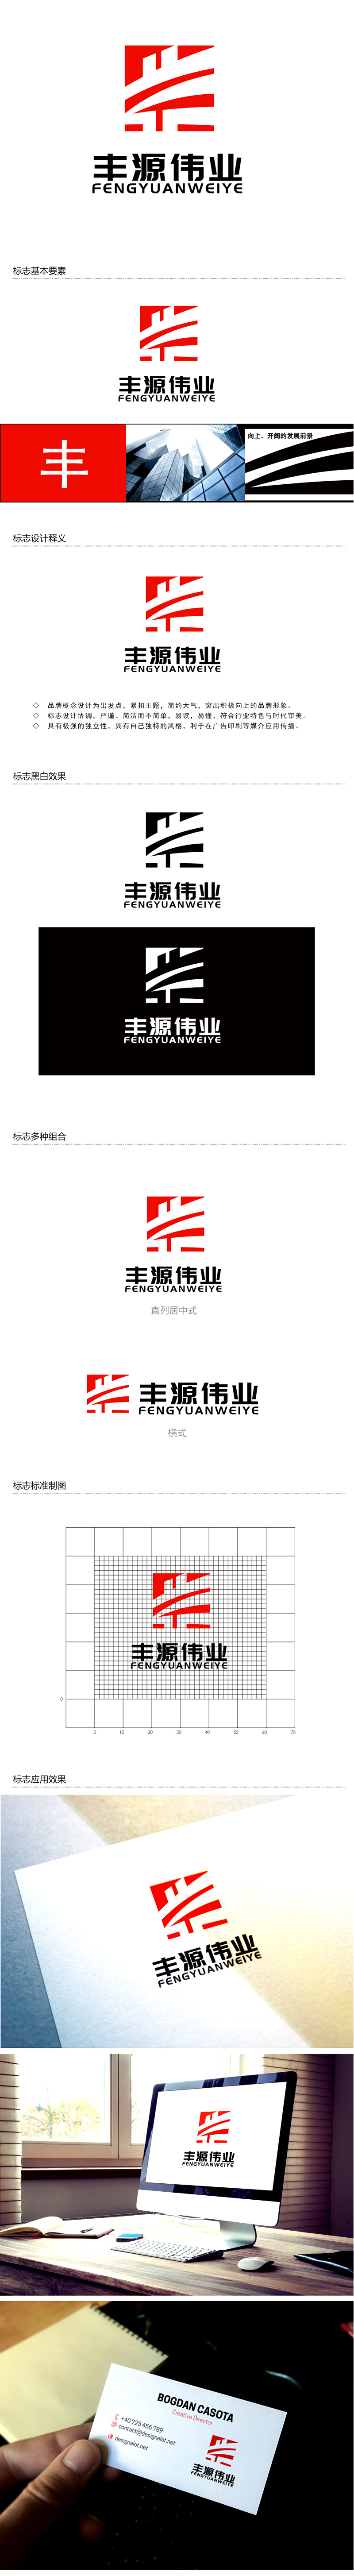 李杰的北京丰源伟业建筑装饰工程有限公司logo设计